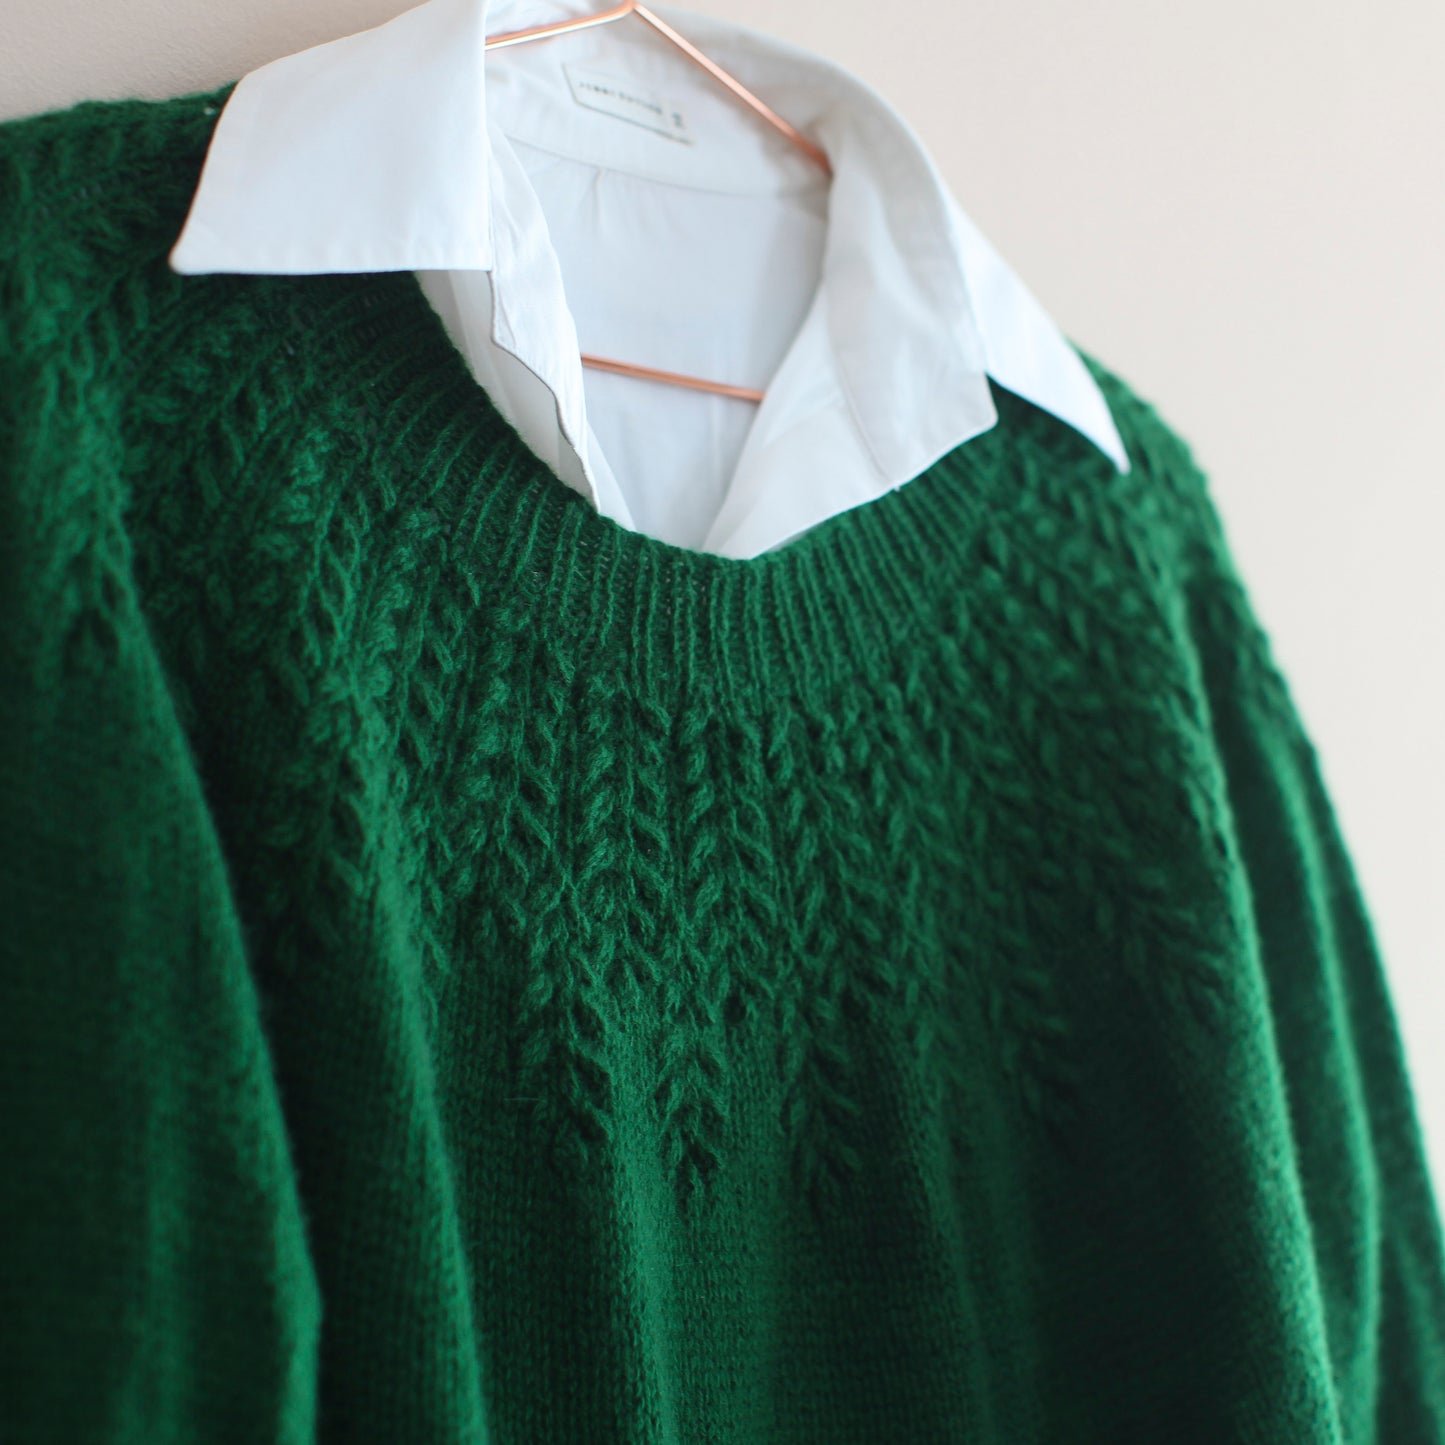 field sweater yarn kit